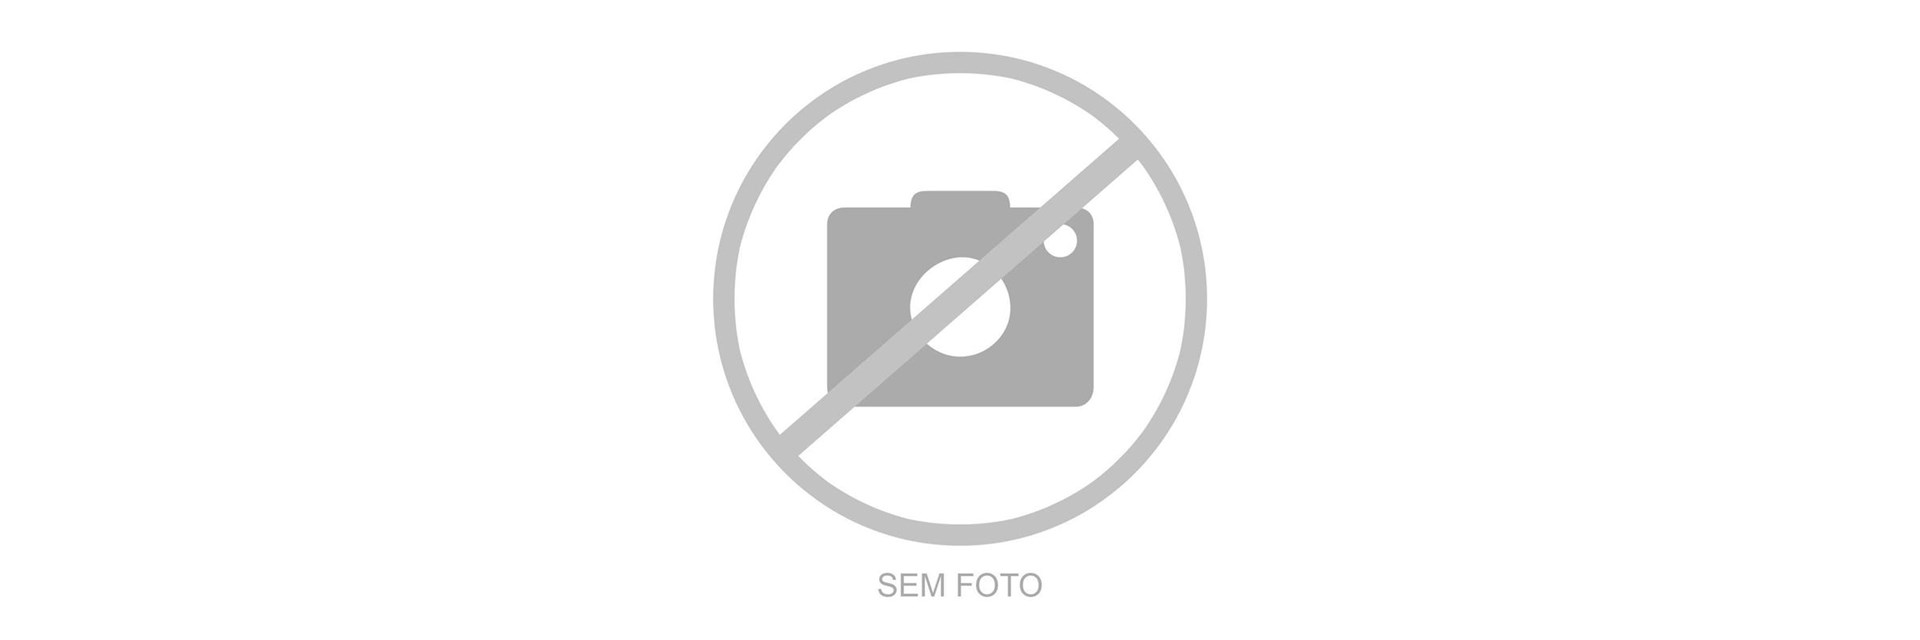 Eixo Dianteiro Futura/Concept/Lev460 - V10